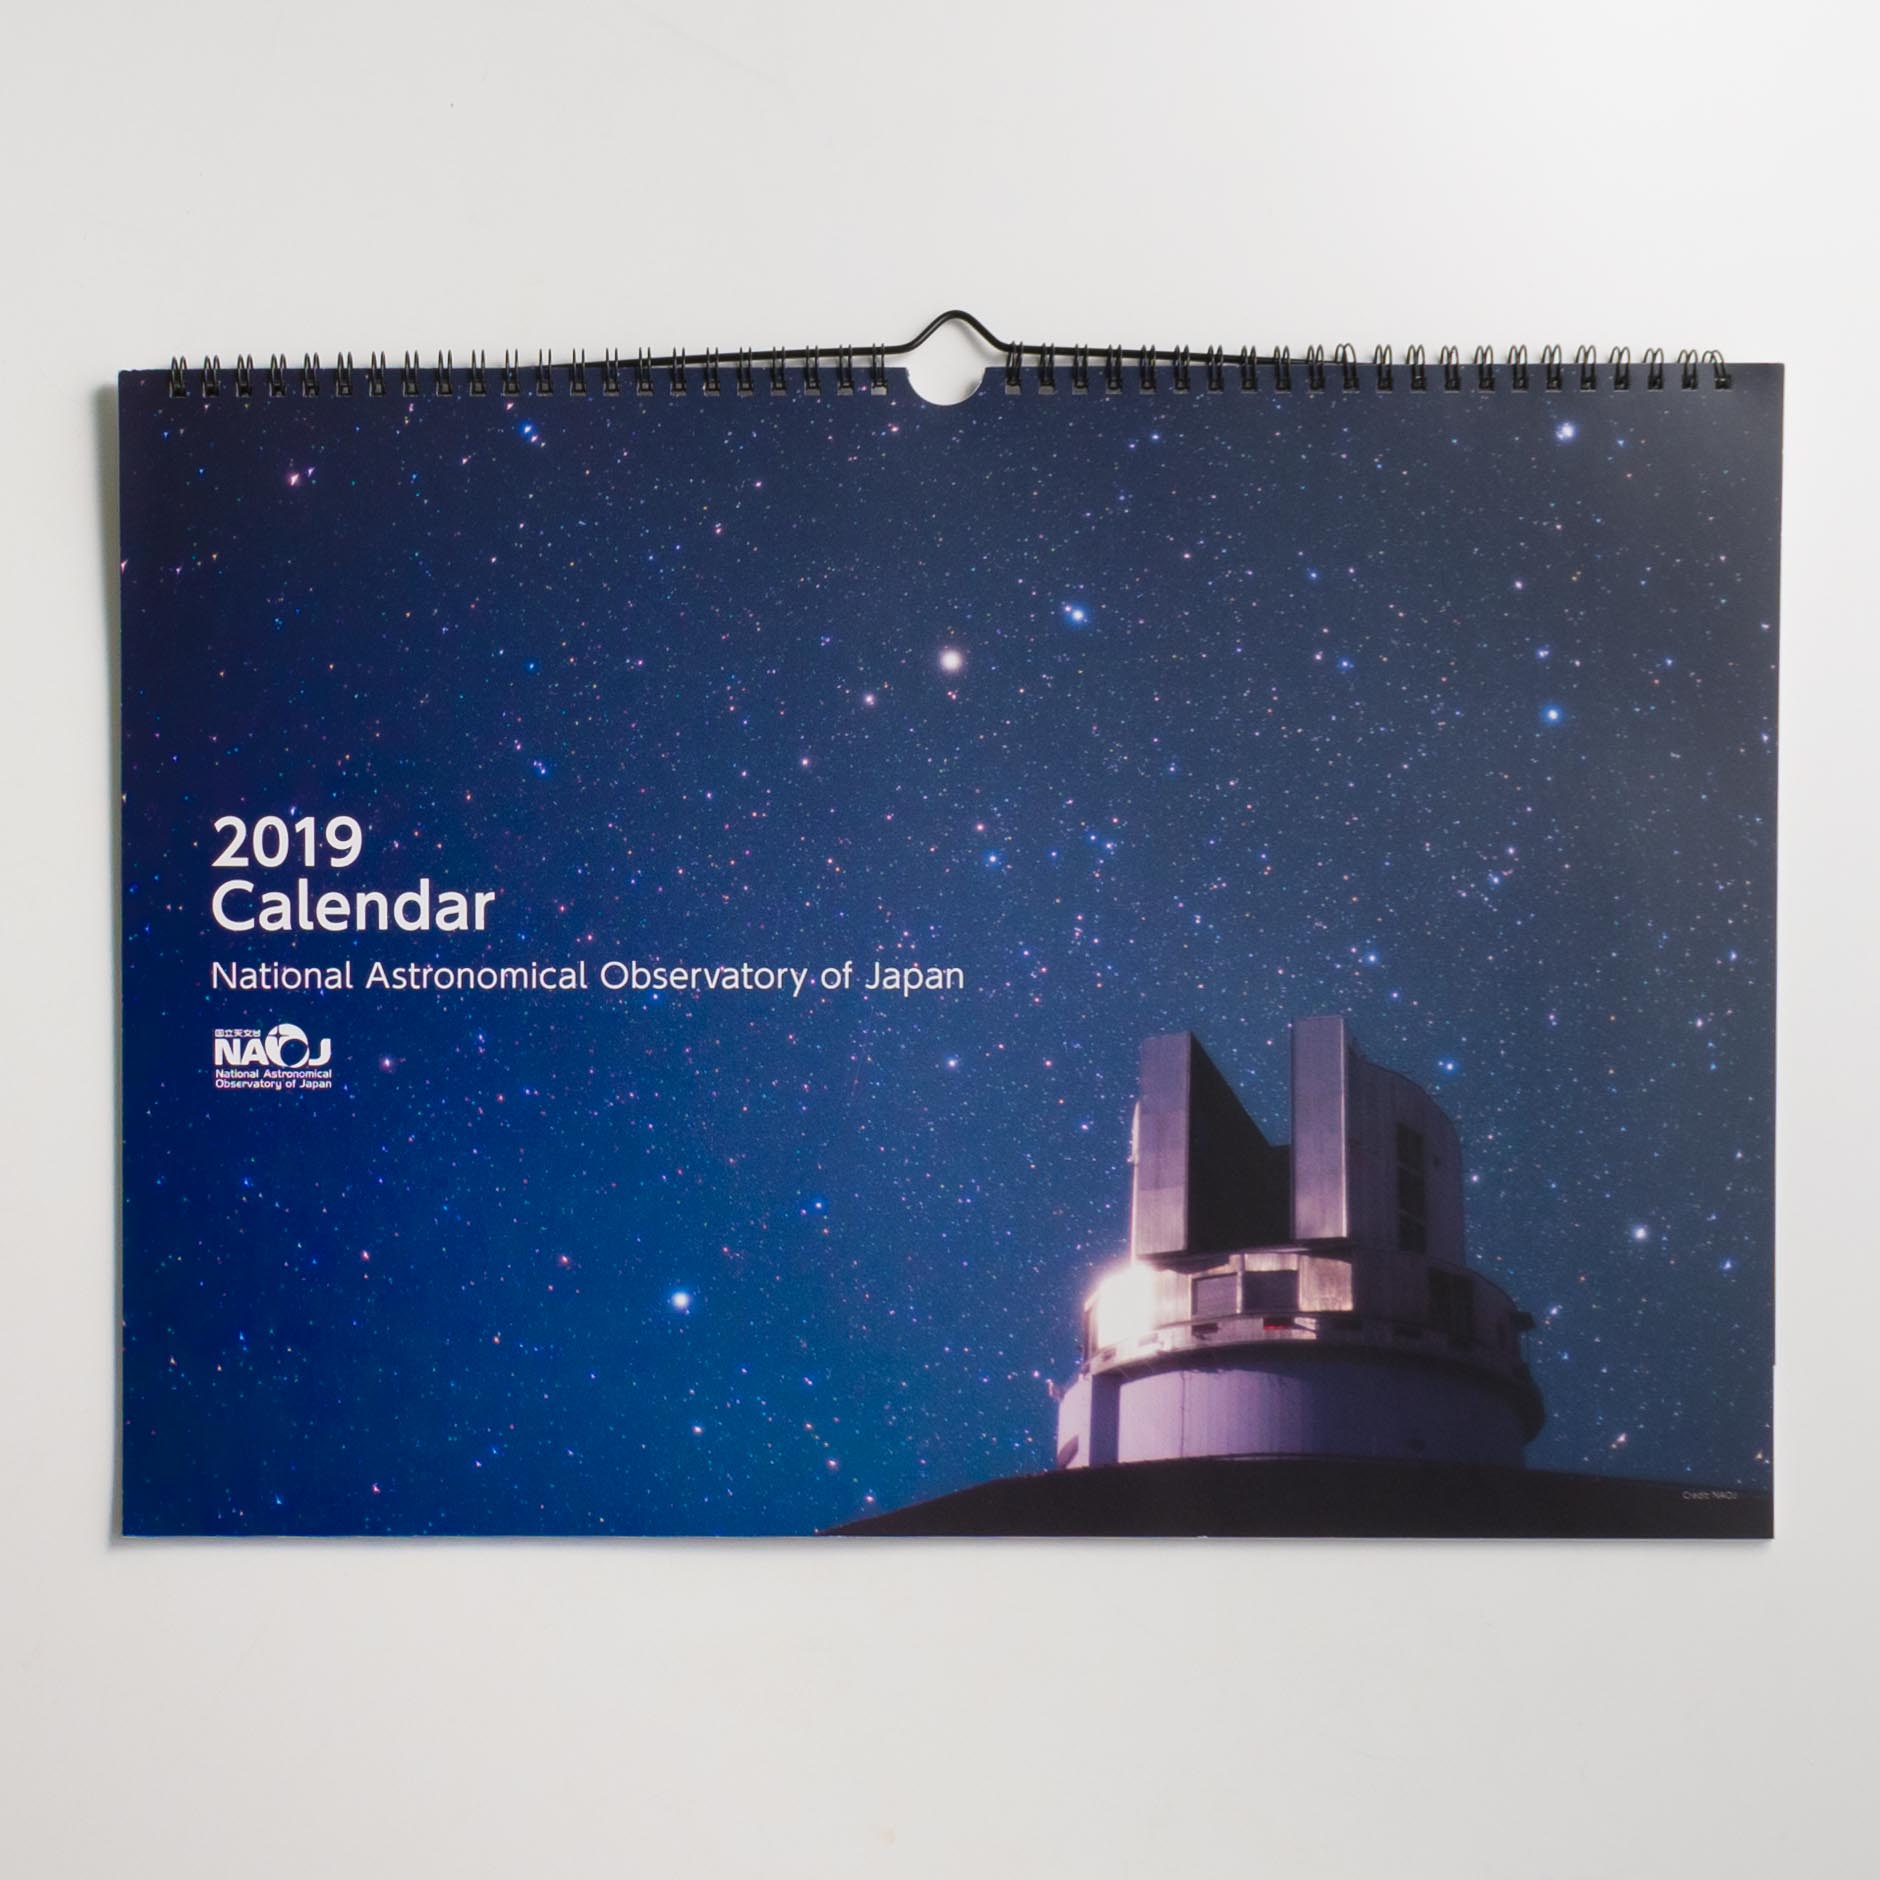 「自然科学研究機構　国立天文台 様」製作のオリジナルカレンダー